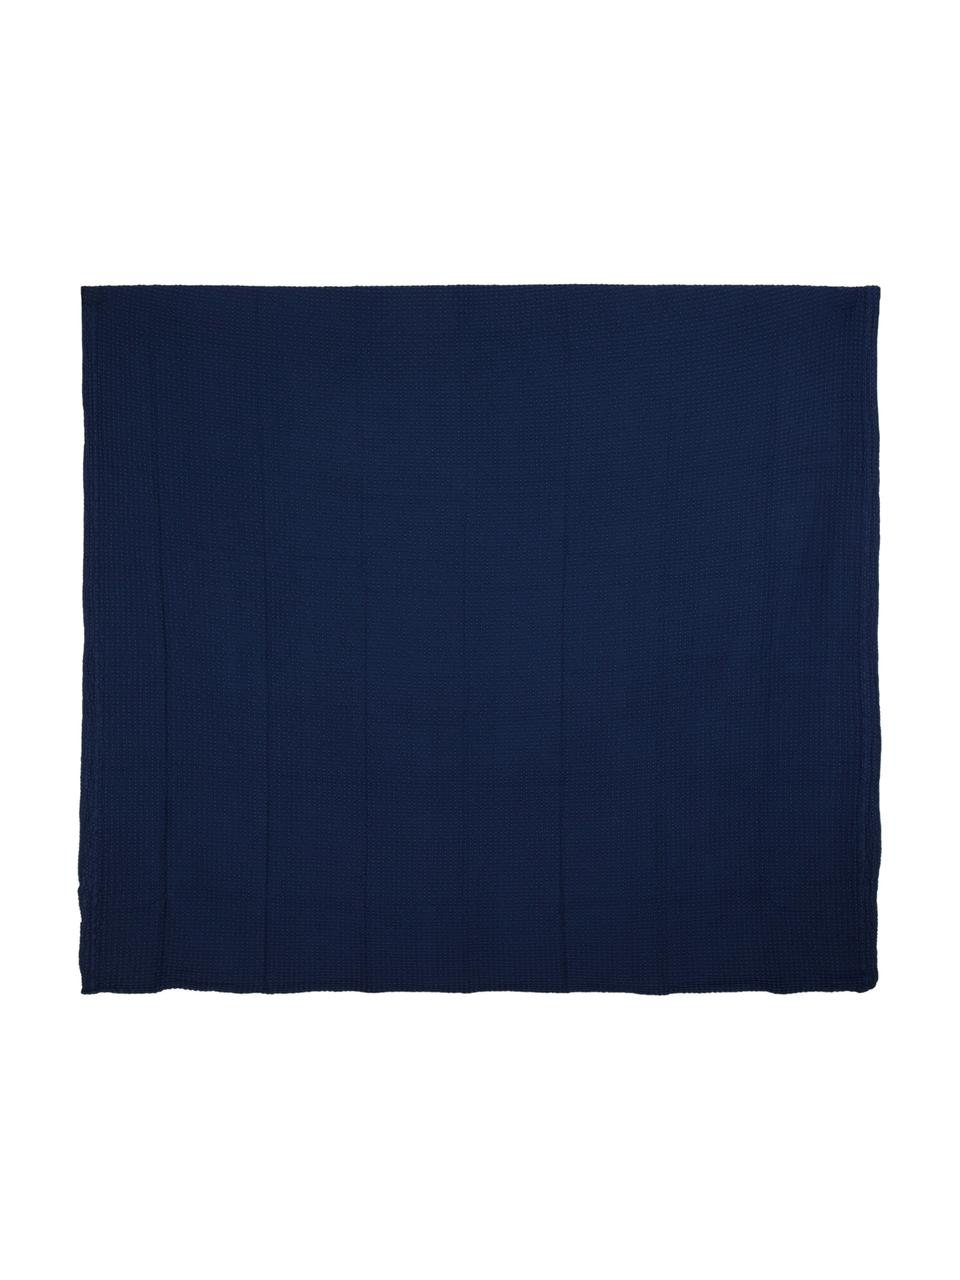 Copriletto in cotone Nettare, Blu marino, Larg. 260 x Lung. 260 cm